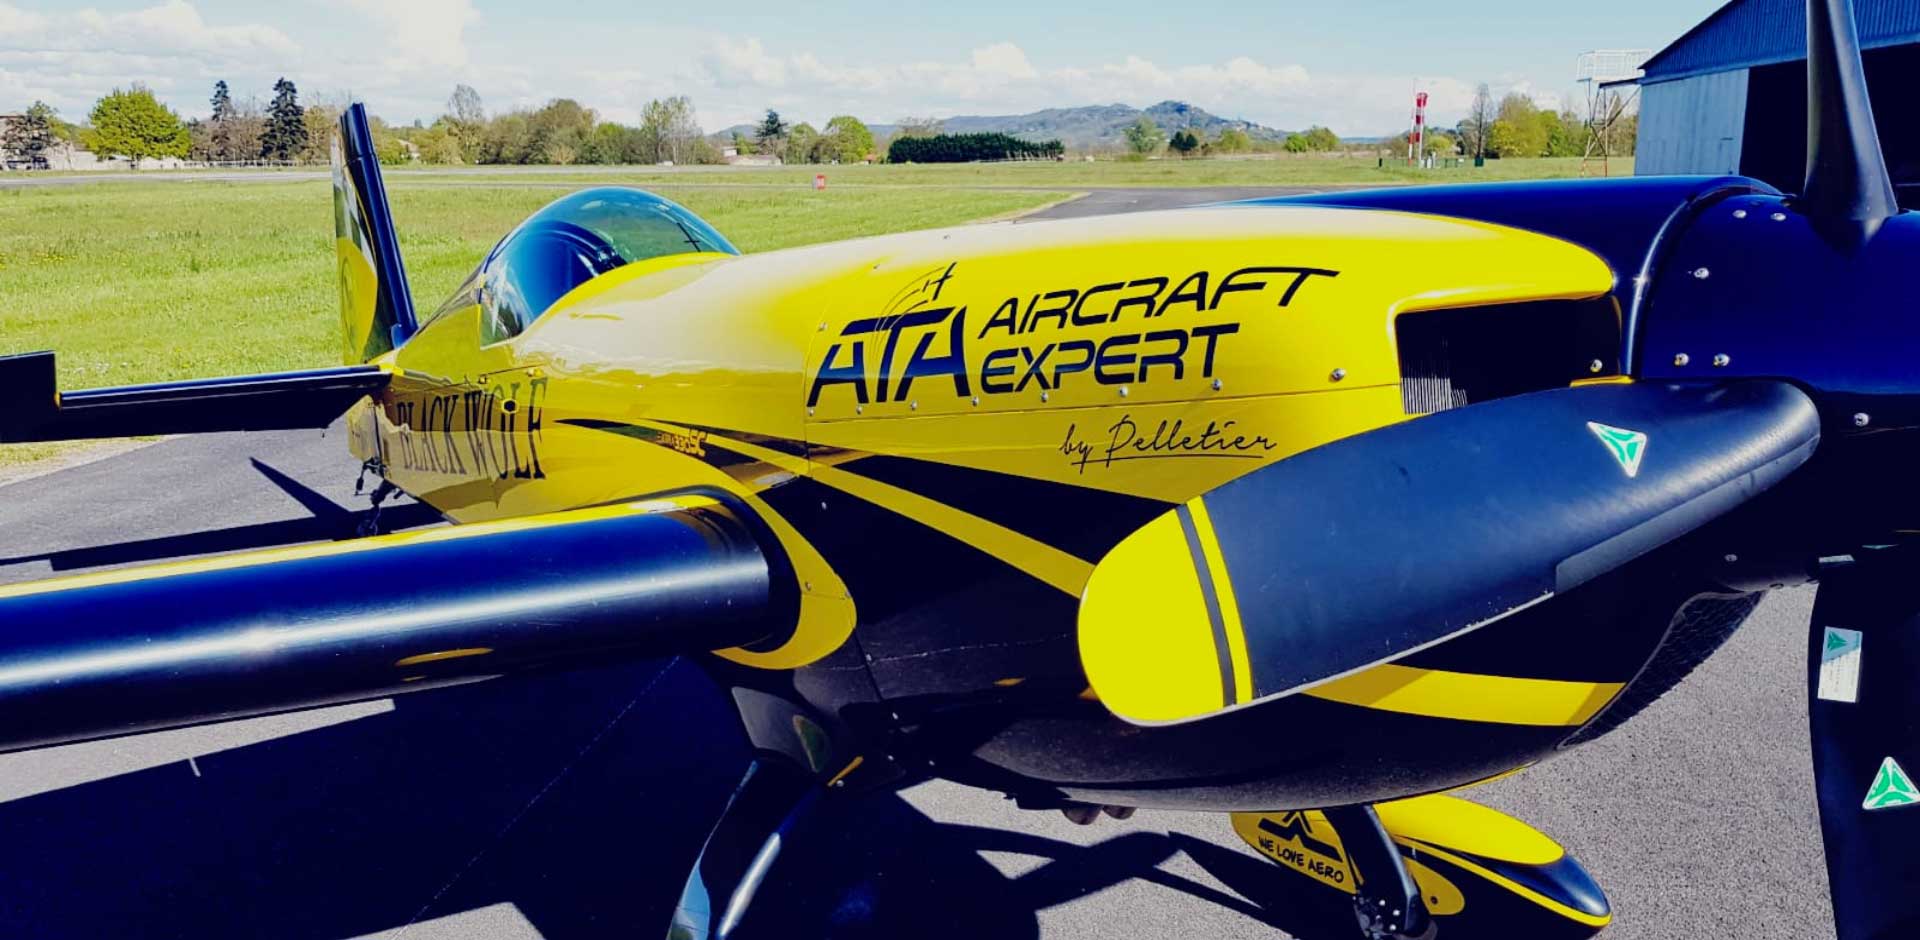 Le Champion du Monde de Voltige Aérienne 2019 sur un avion sponsorisé par ATA ! The Aerial Aerobatic World Champion 2019 on a plane sponsored by ATA!